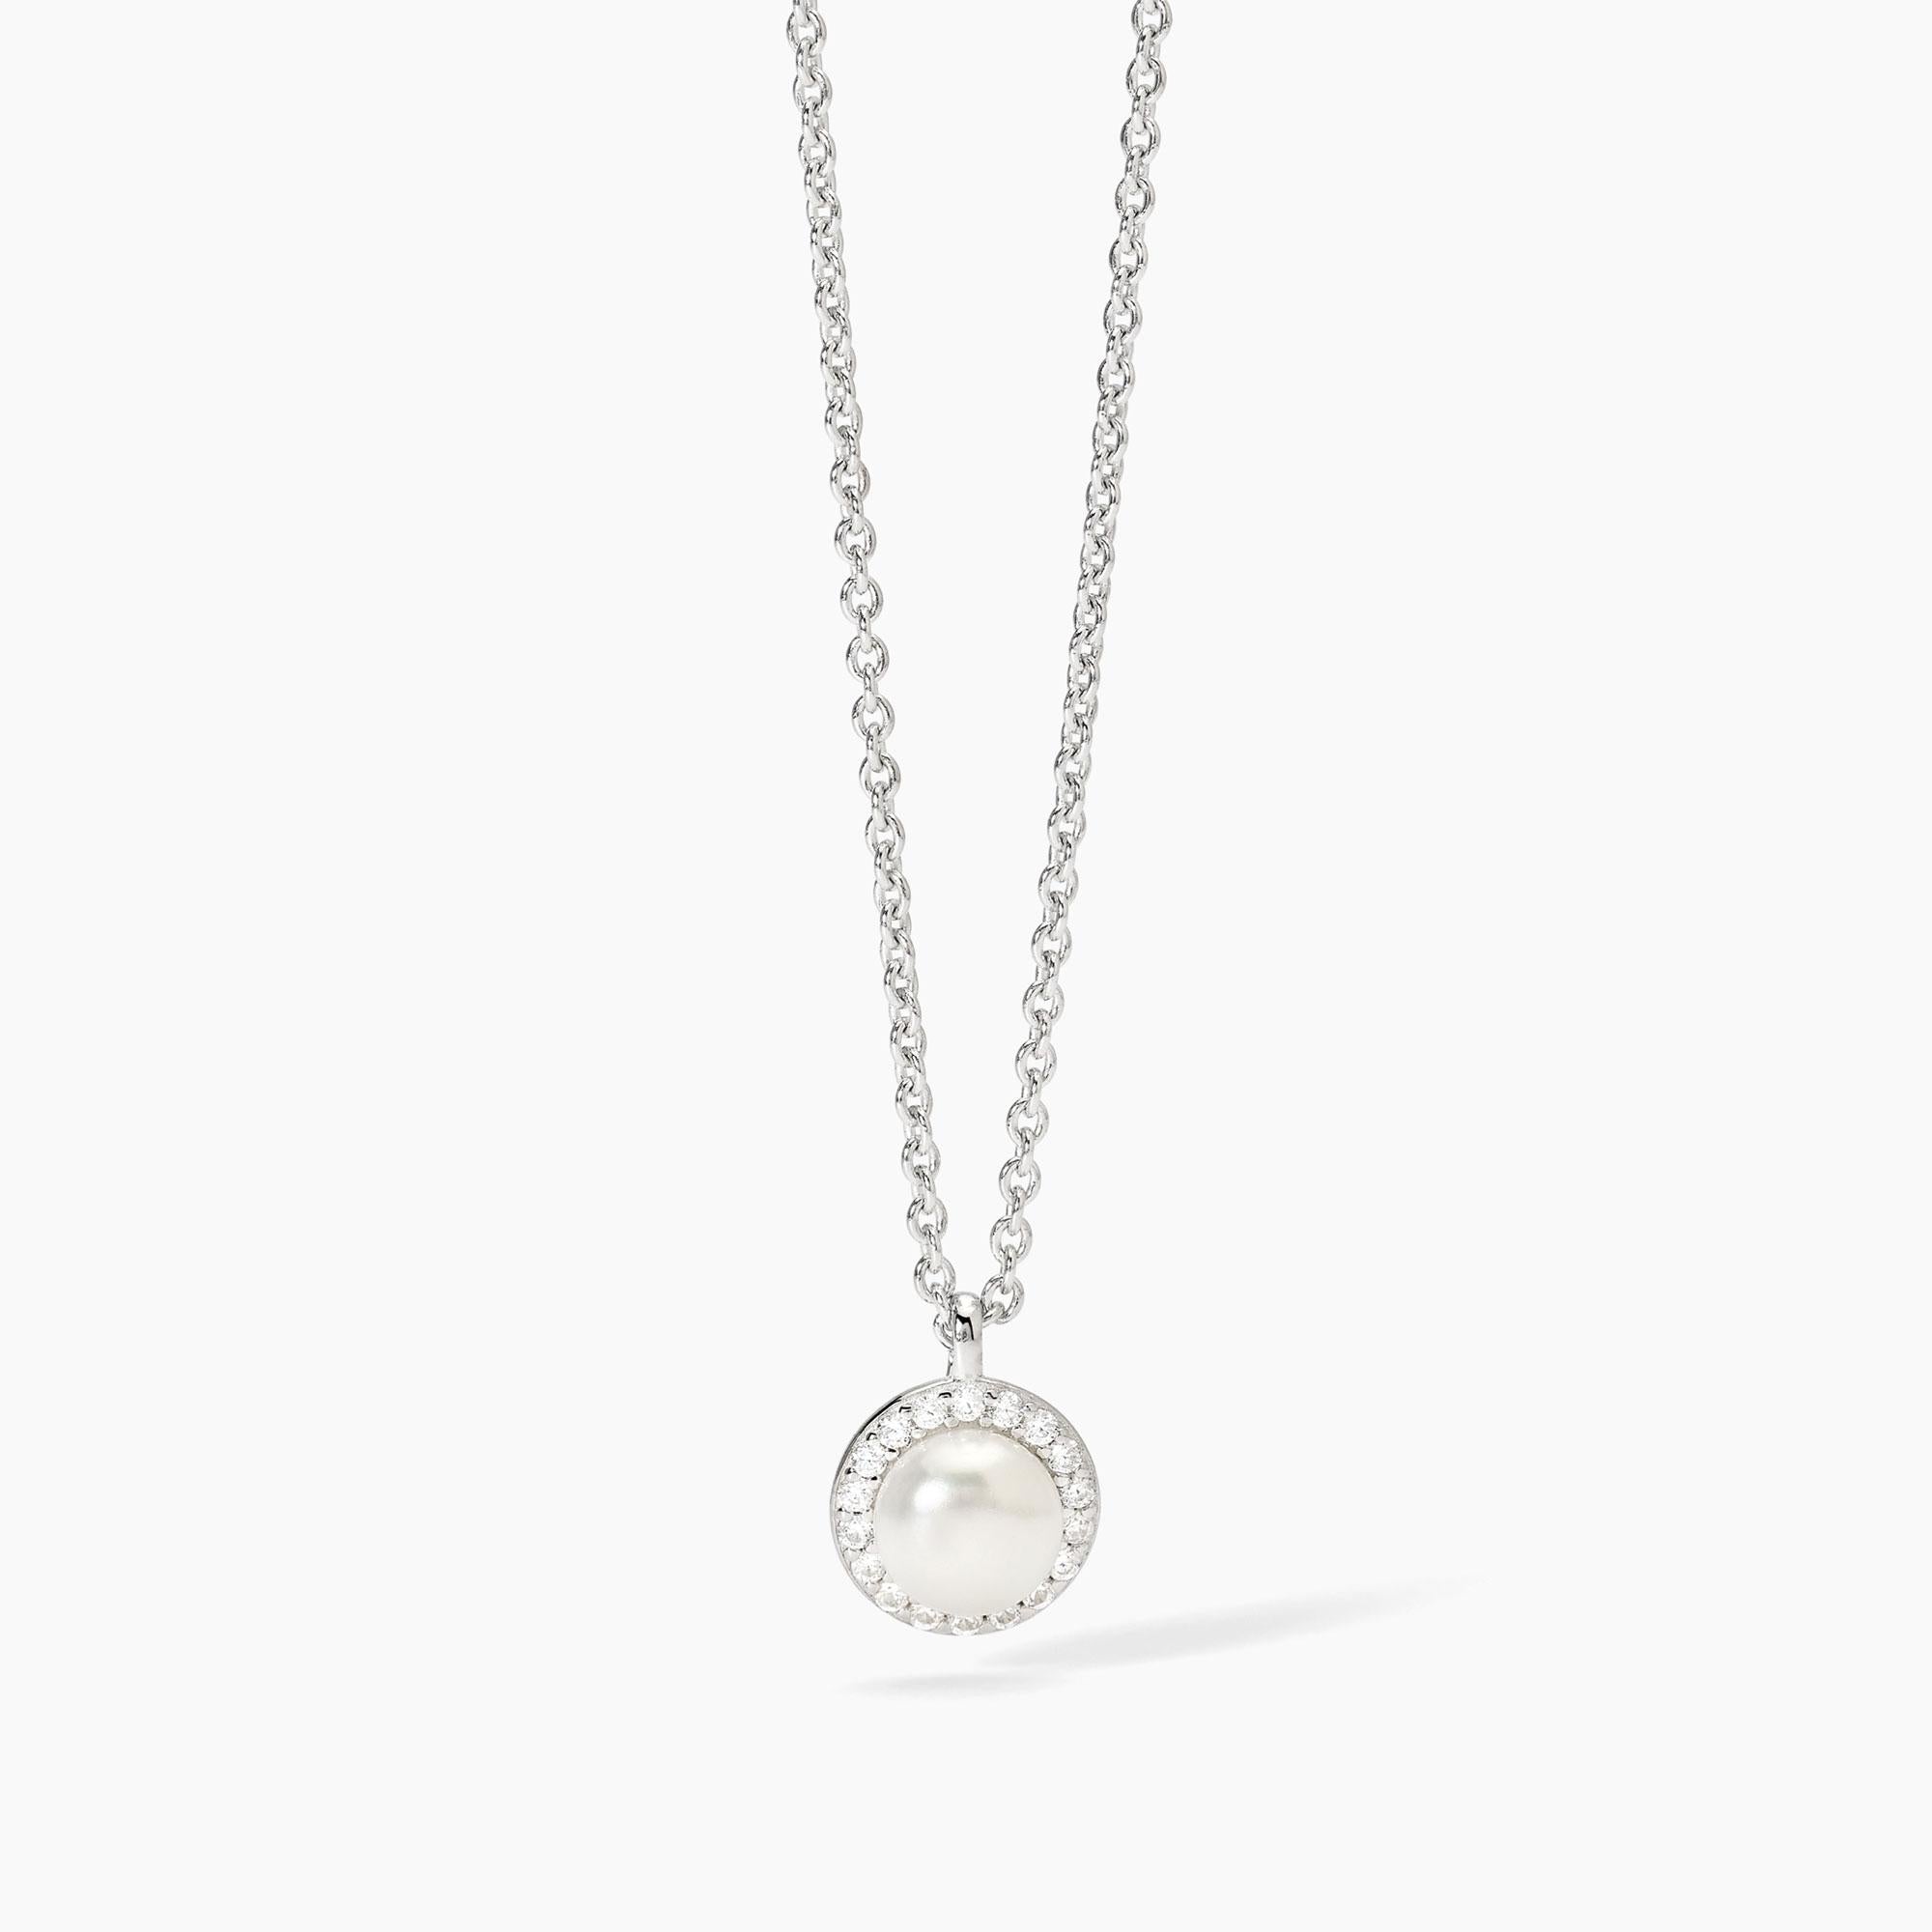 Mabina Femme - Collier en argent avec perle de culture et zircons MILANESIENNE - 553674